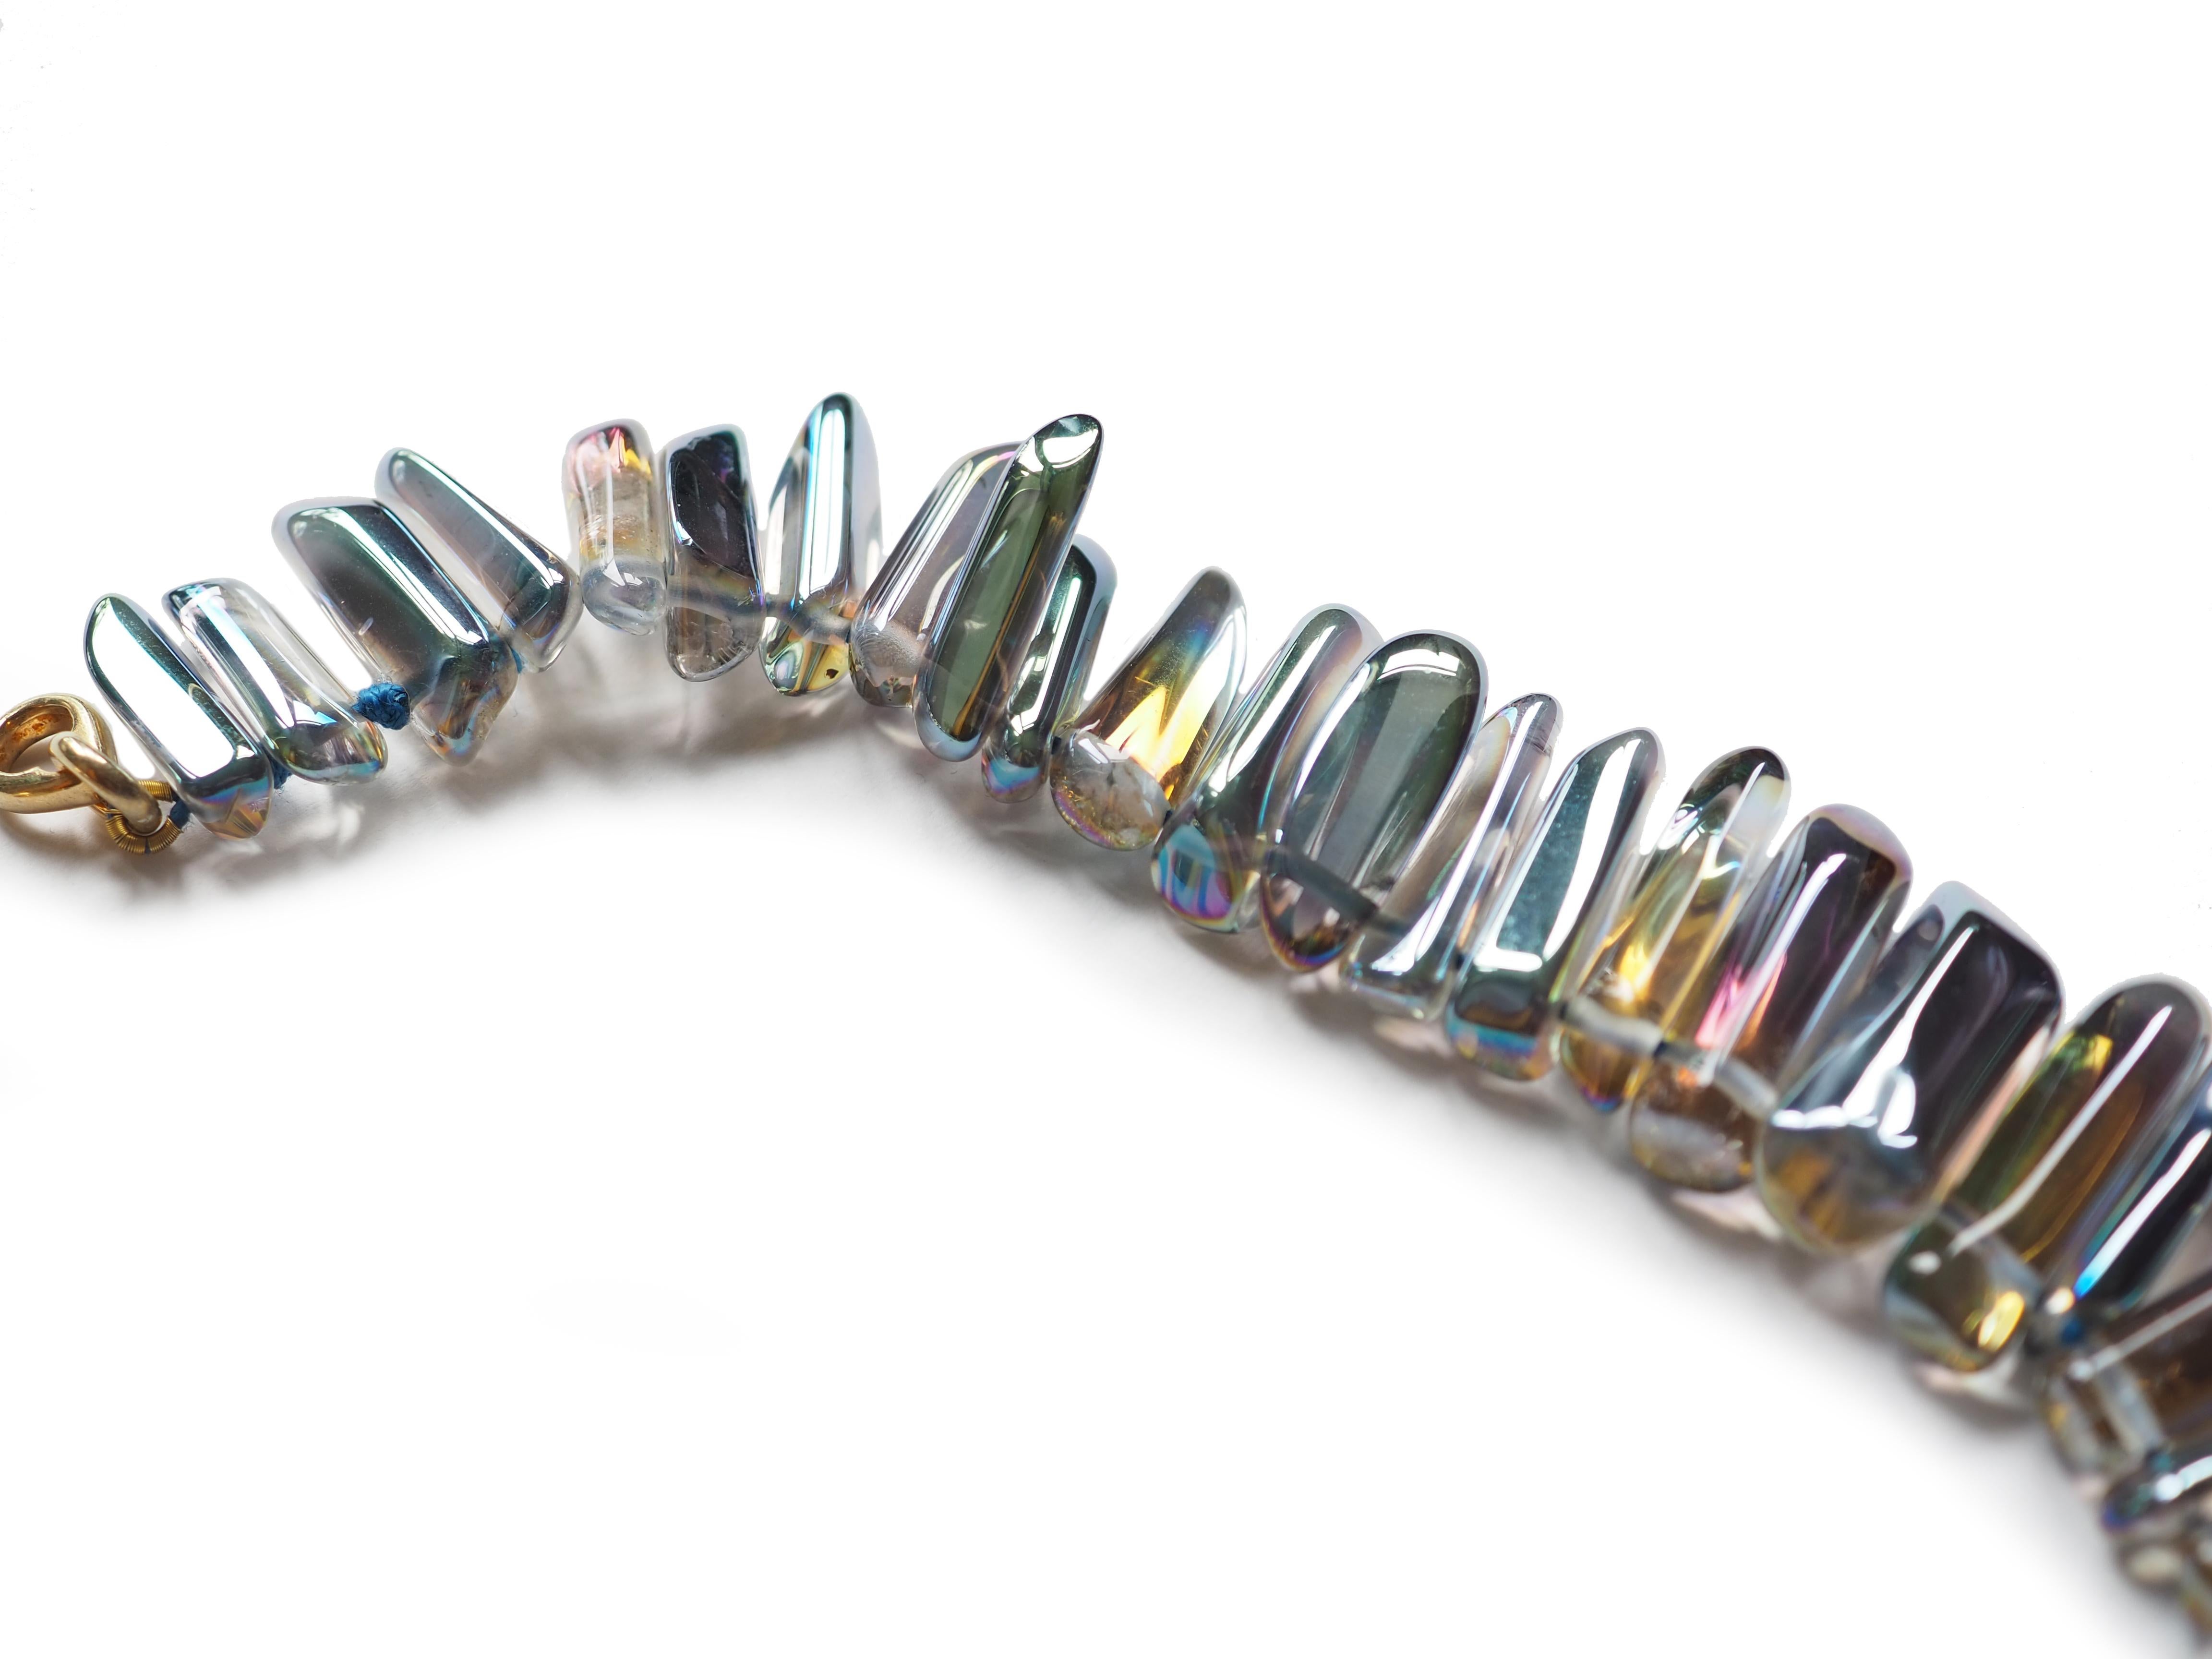 Achat Kristall Perlenkette blau opaleszierende Farbe Länge 45cm.
Alle Giulia Colussi-Schmuckstücke sind neu und wurden noch nie zuvor getragen. Jeder Artikel wird in unseren Schachteln als Geschenk verpackt und in einem eleganten Beutel oder einer